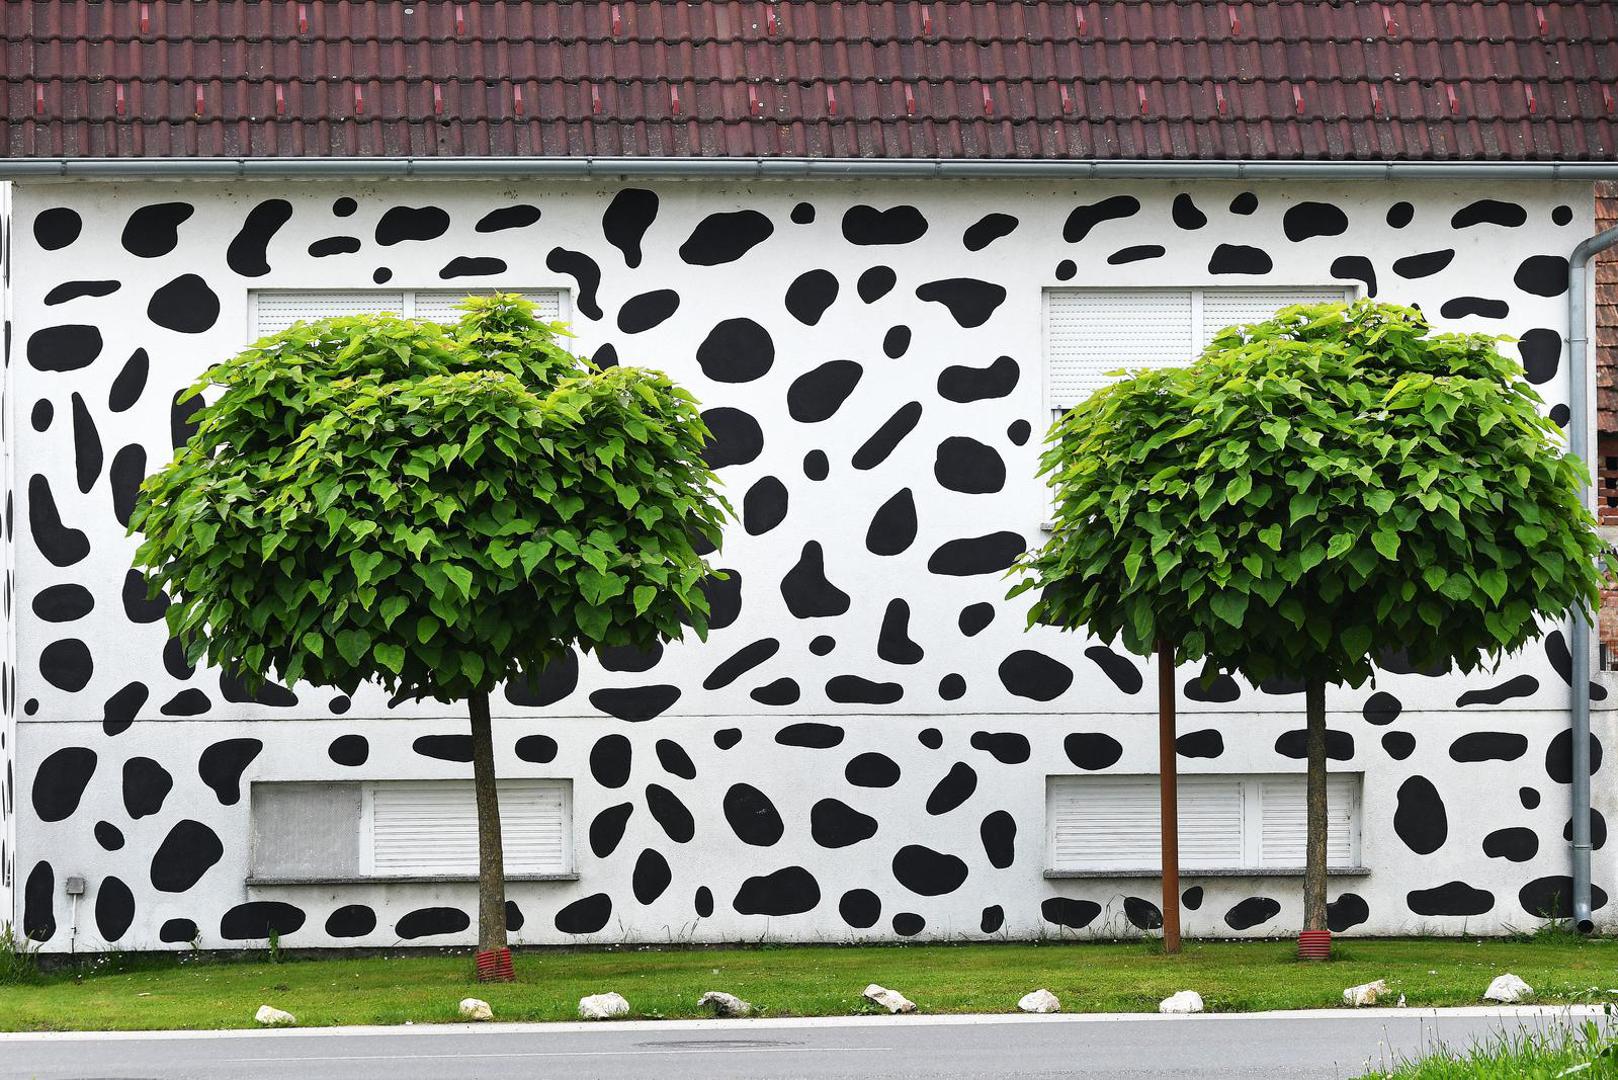 Bijela fasada prošarana je crnim mrljama koje neodoljivo podsjećaju na dalmatinskog psa, odnosno dalmatinera pa tako kuću od milja i zovu - 'Dalmatiner kuća'.